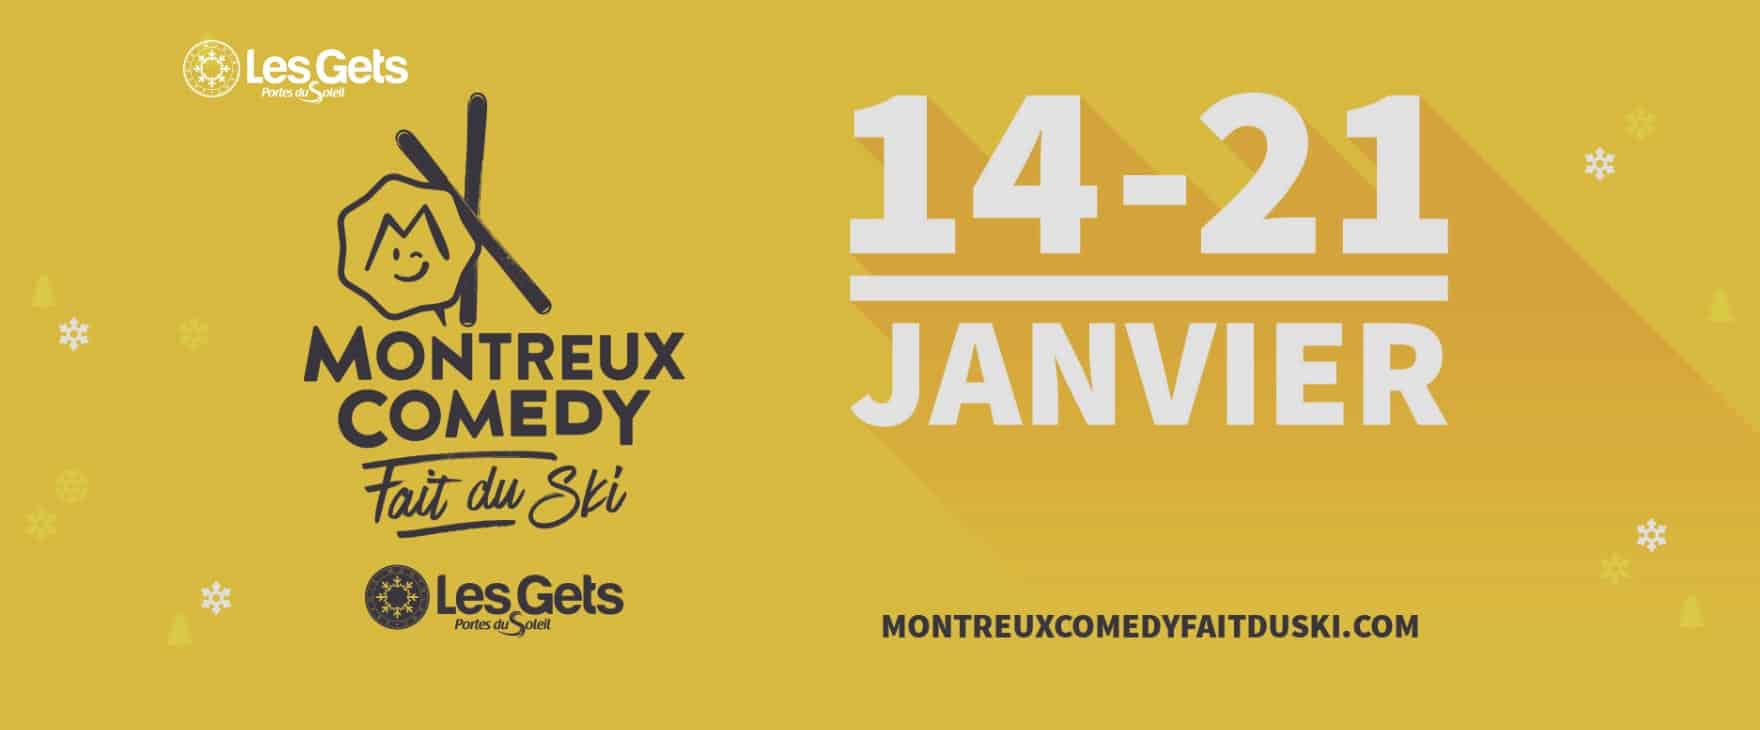 Montreux Comedy Festival Les Gets